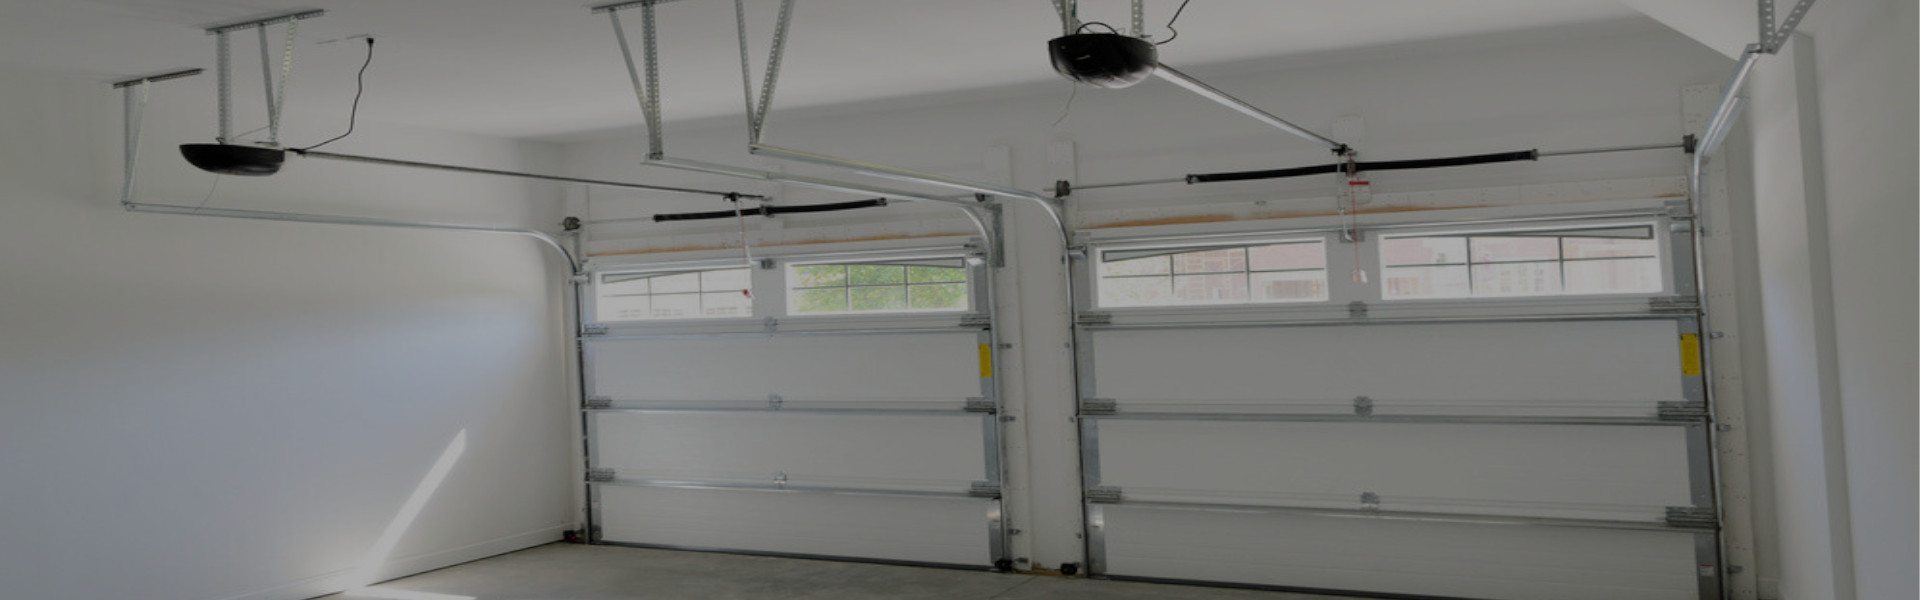 Slider Garage Door Repair, Glaziers in Tolworth, Berrylands, KT5